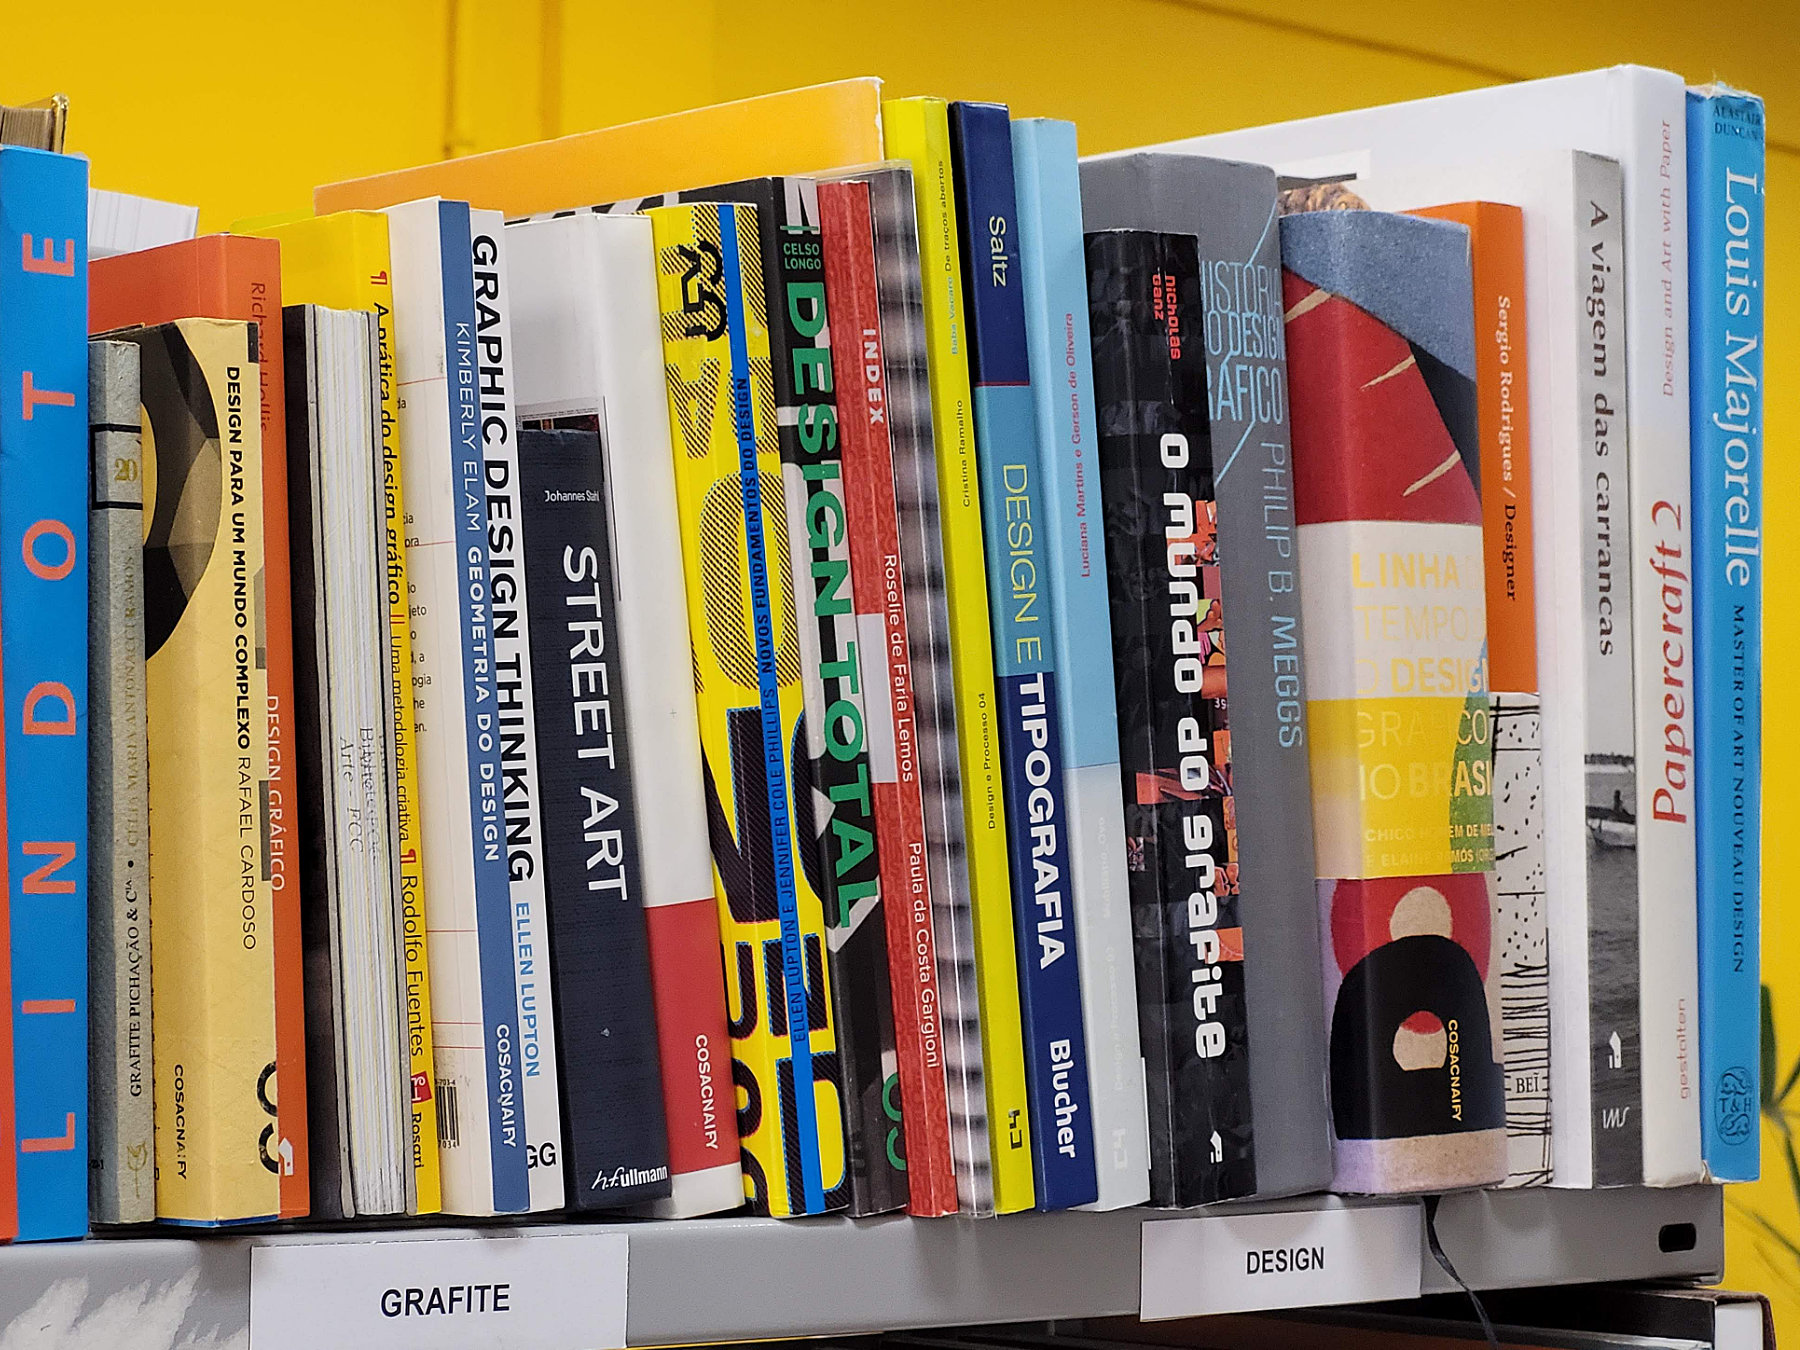 Foto de livros de design e de grafite organizados no andar de uma estante